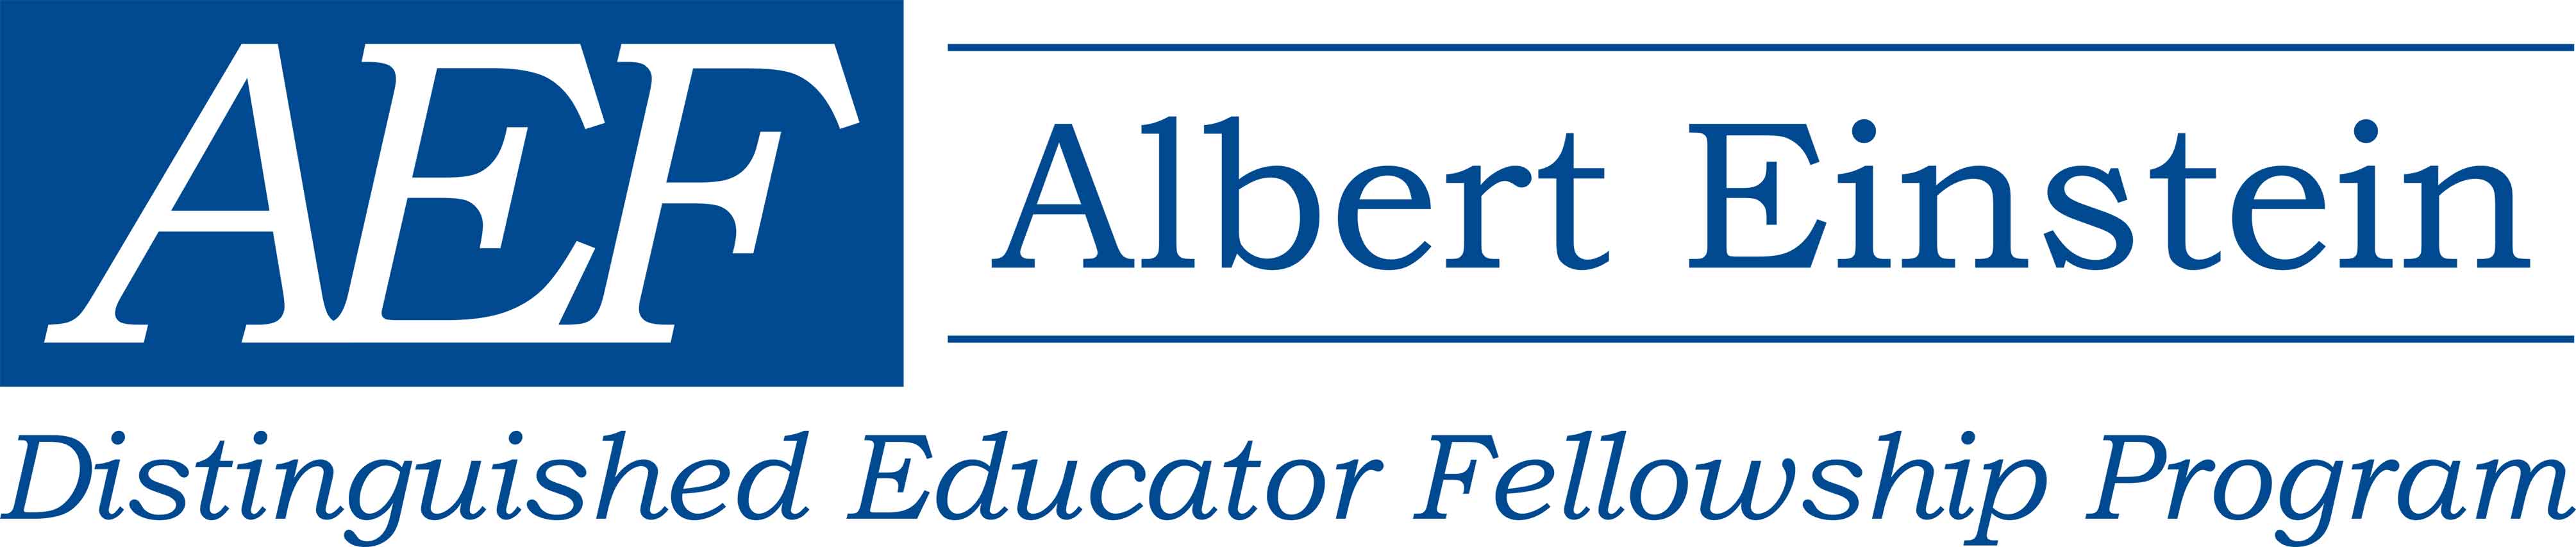 Accomplished class of STEM teachers selected as Albert Einstein Educator Fellows